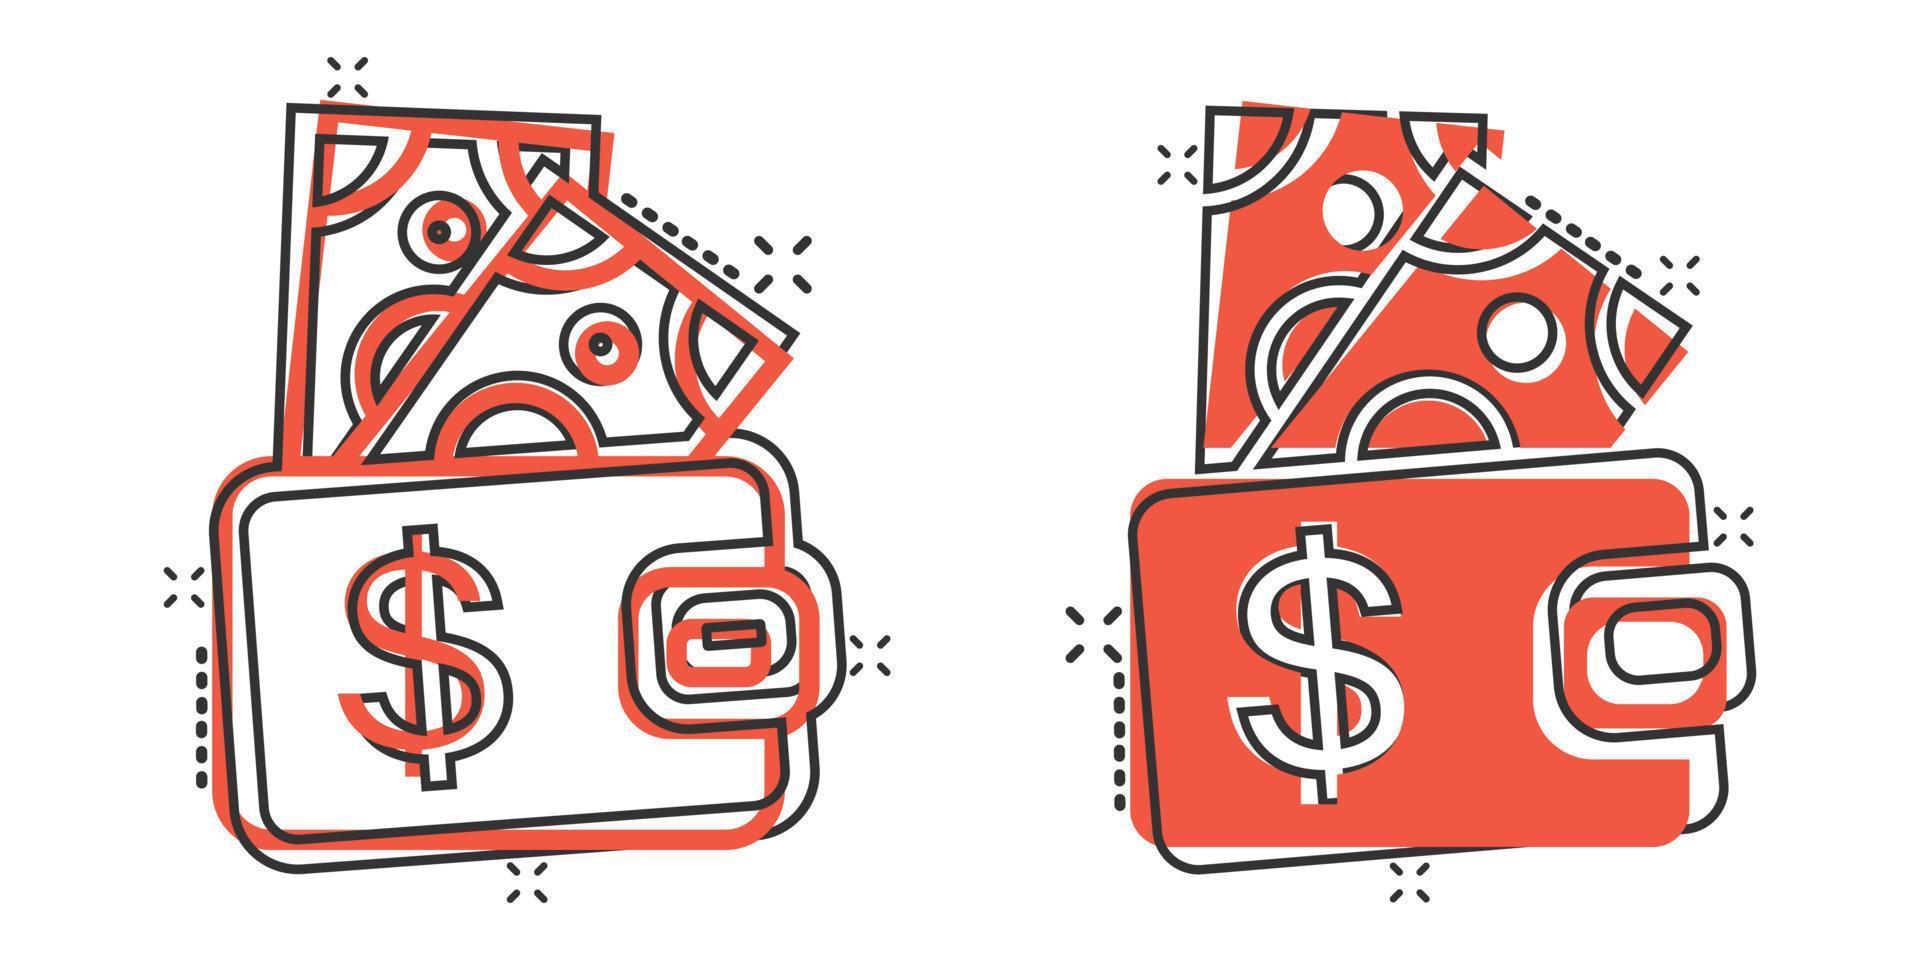 ícone de carteira em estilo cômico. ilustração em vetor bolsa dos desenhos animados no fundo branco isolado. conceito de negócio de efeito de respingo de bolsa de finanças.